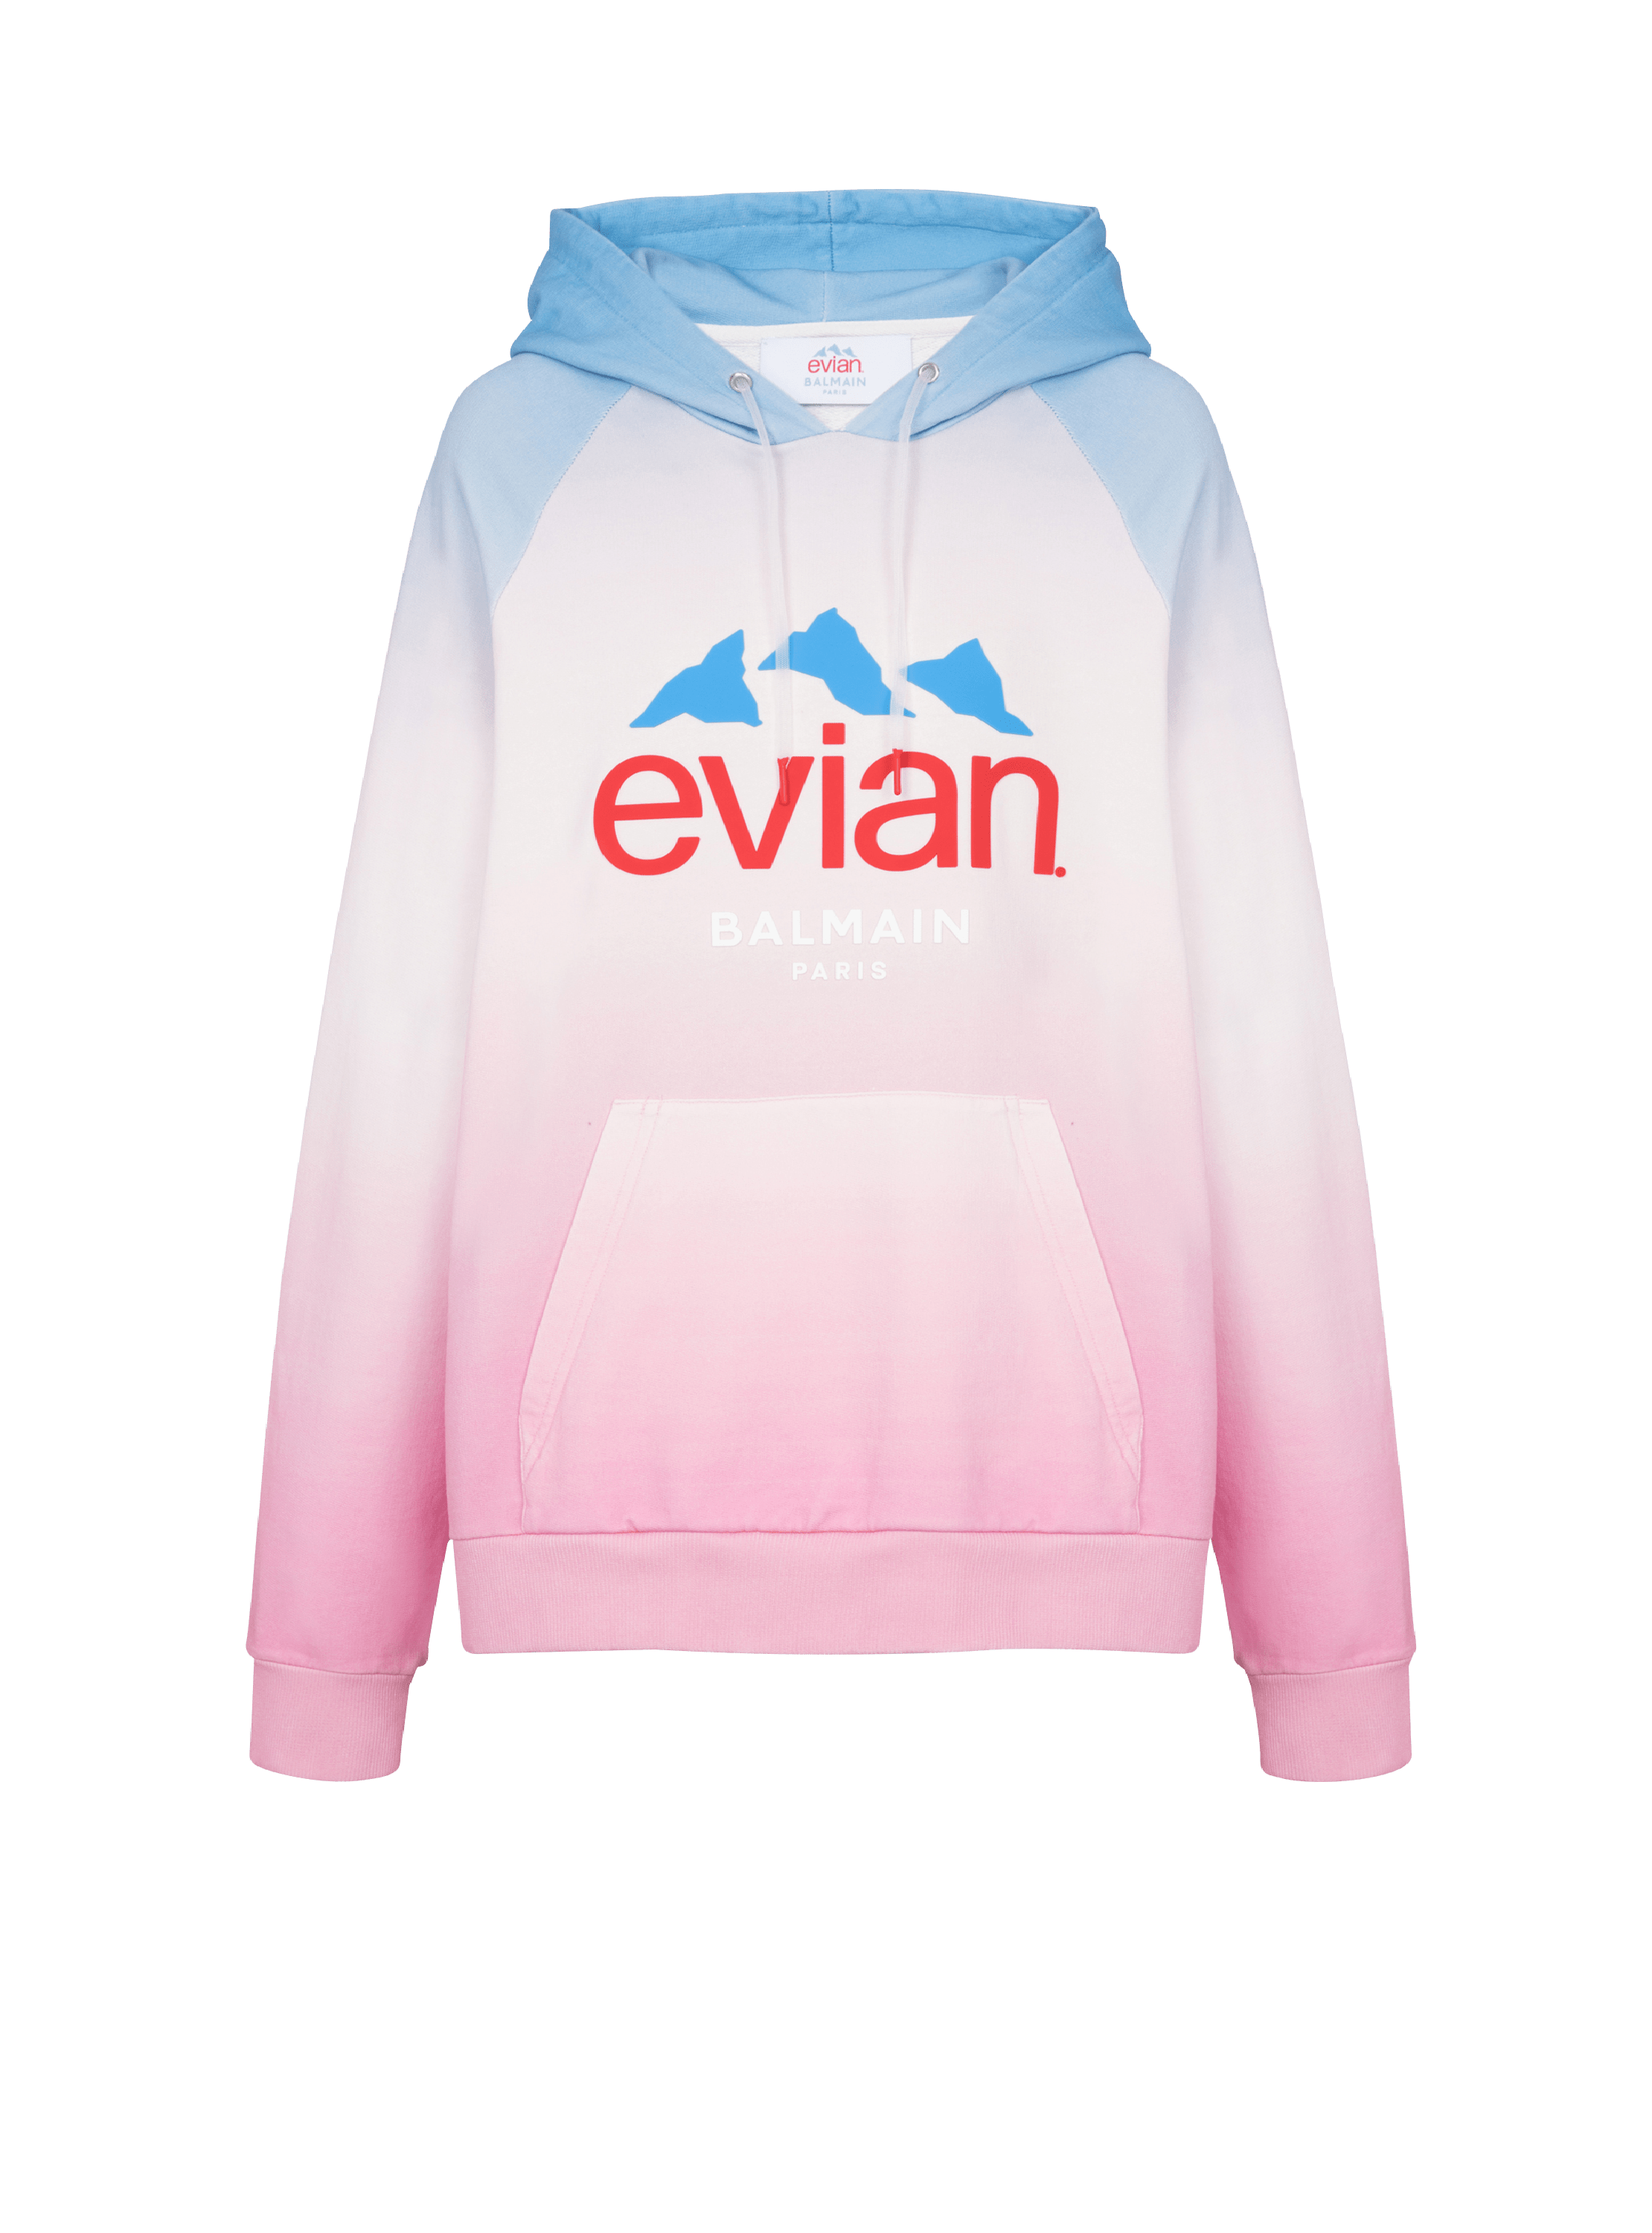 Balmain x Evian - Sudadera con degradado, multicolor, hi-res